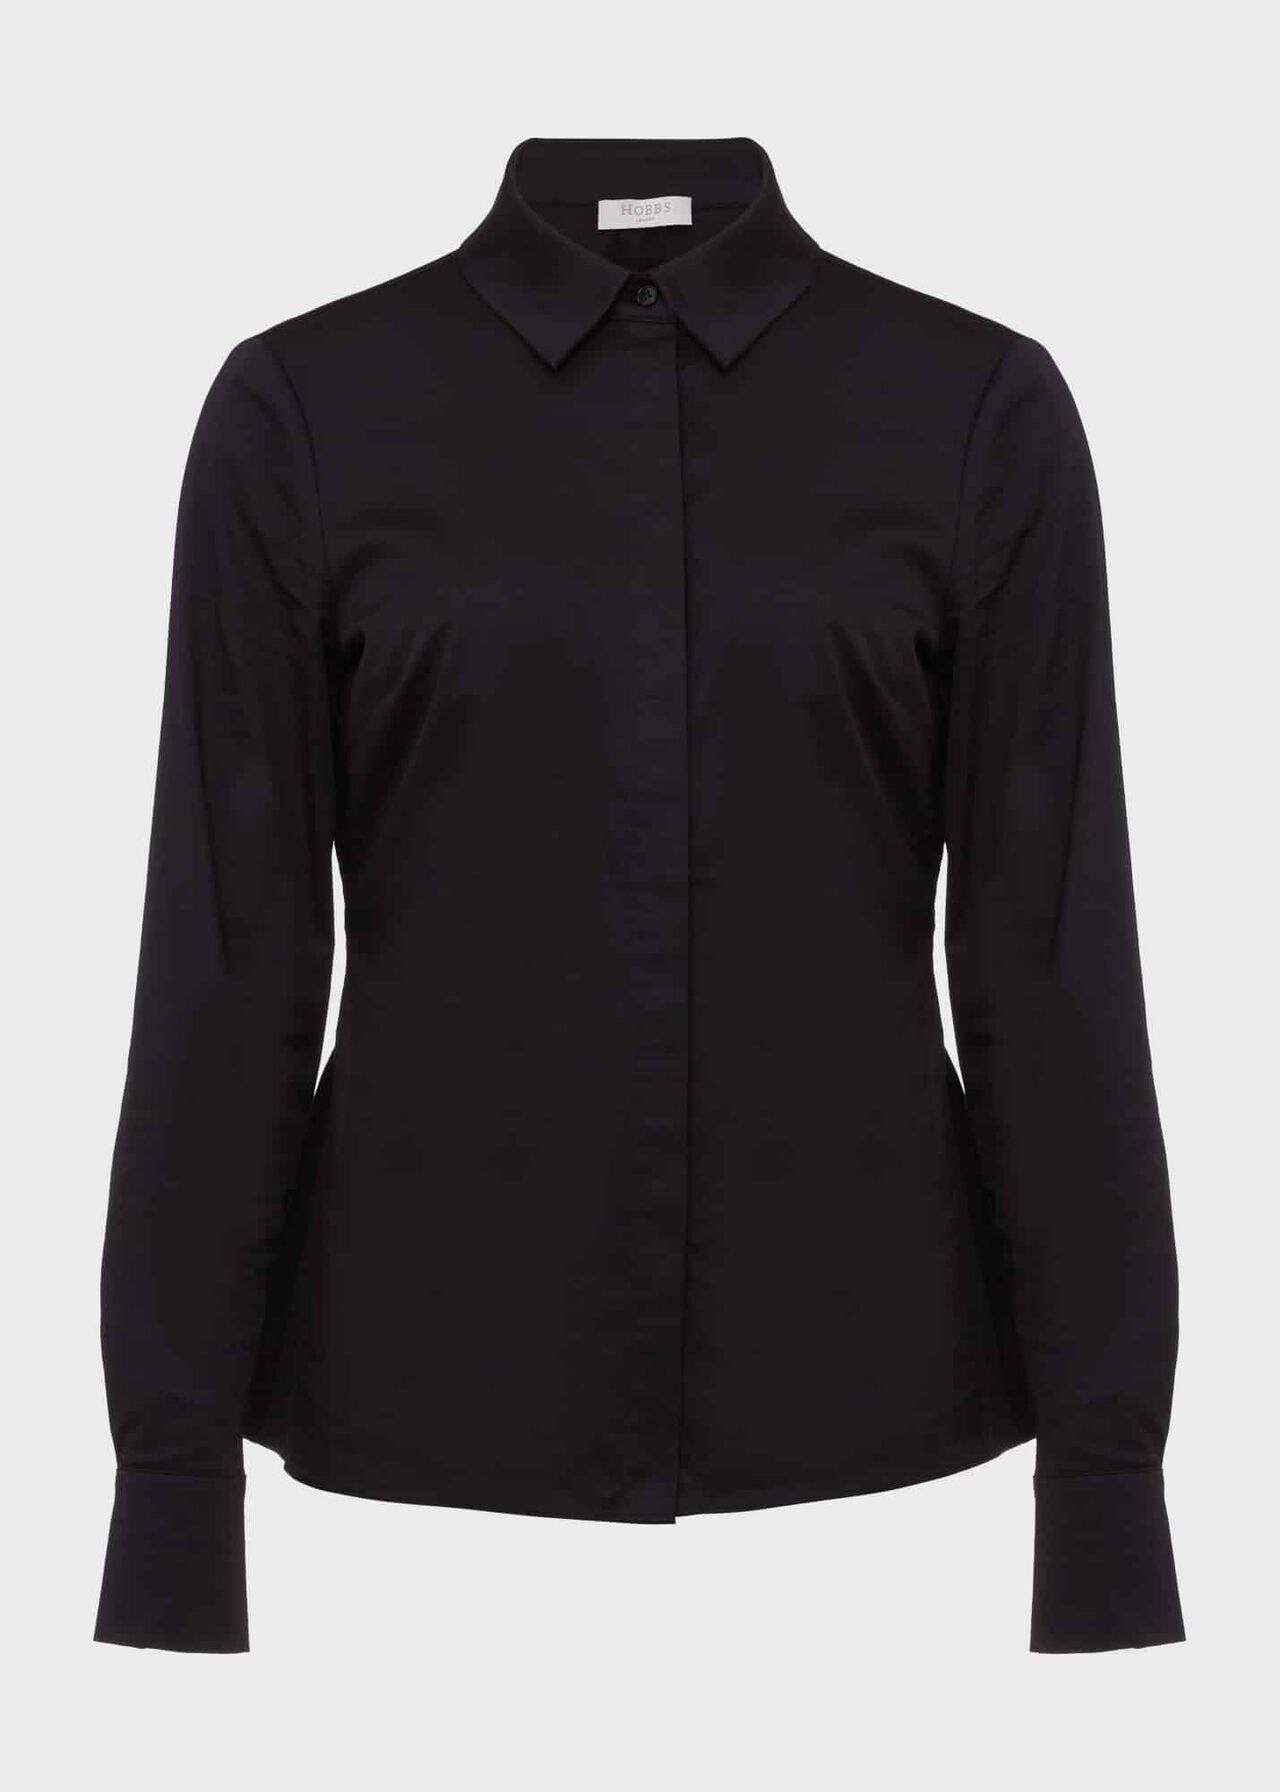 Victoria Cotton Shirt, Black, hi-res